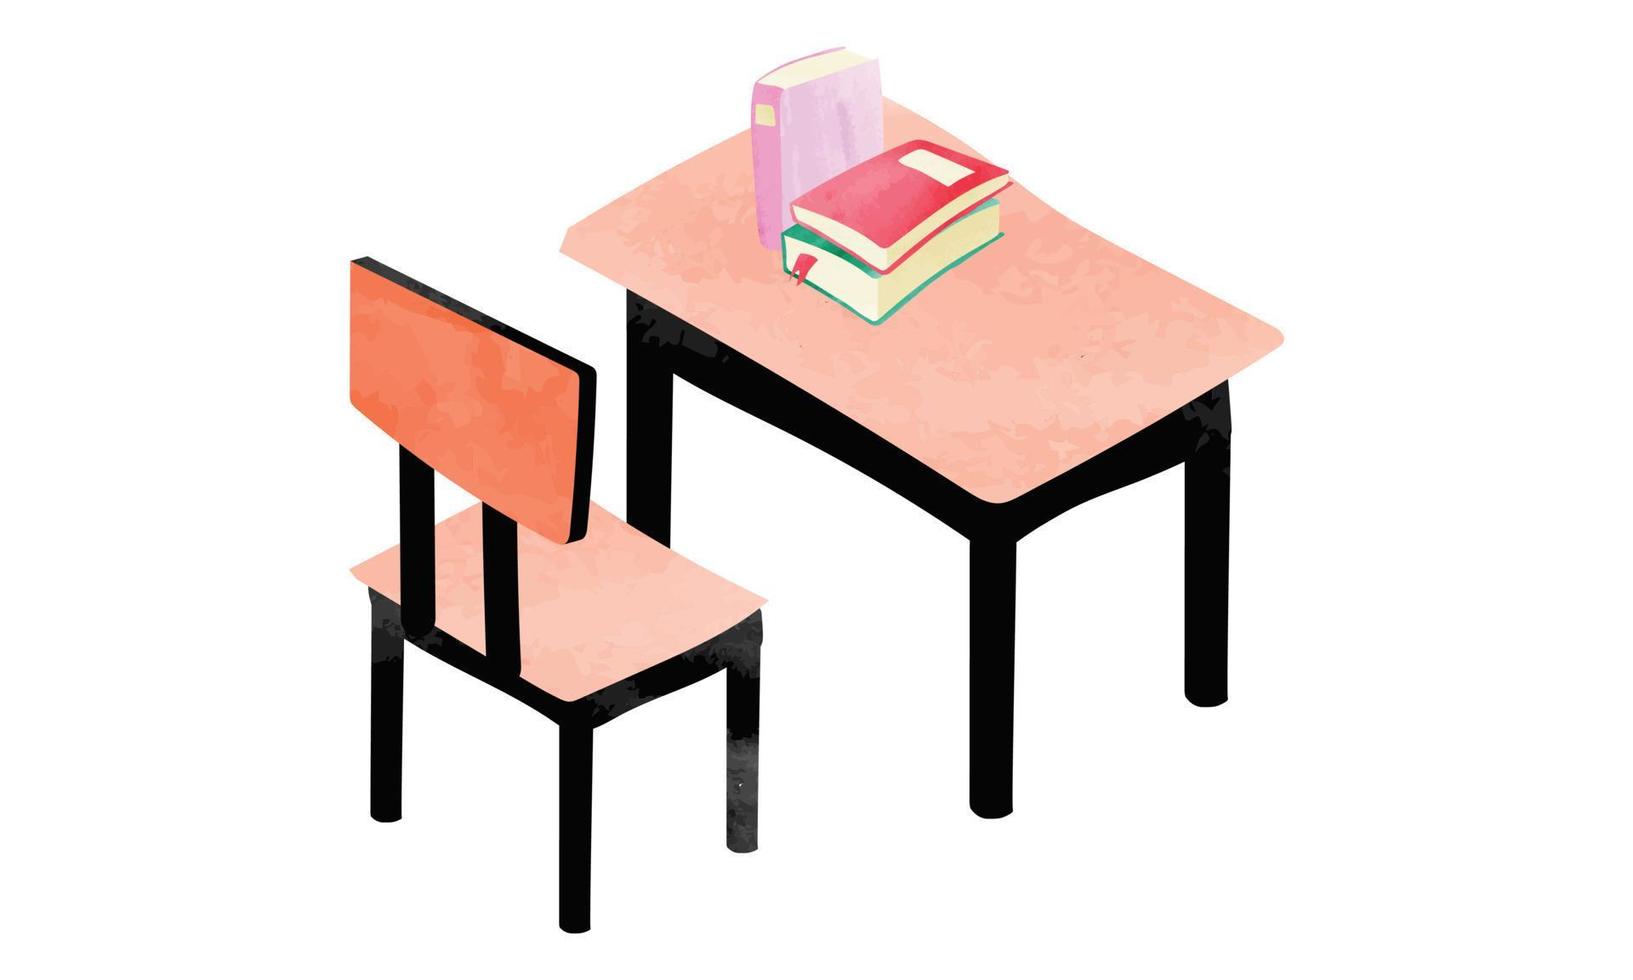 studerande skrivbord och stol vattenfärg stil vektor illustration isolerat på vit bakgrund. vattenfärg skola skrivbord och stol ClipArt. skola förnödenheter. elementärt klassrum trä- möbel